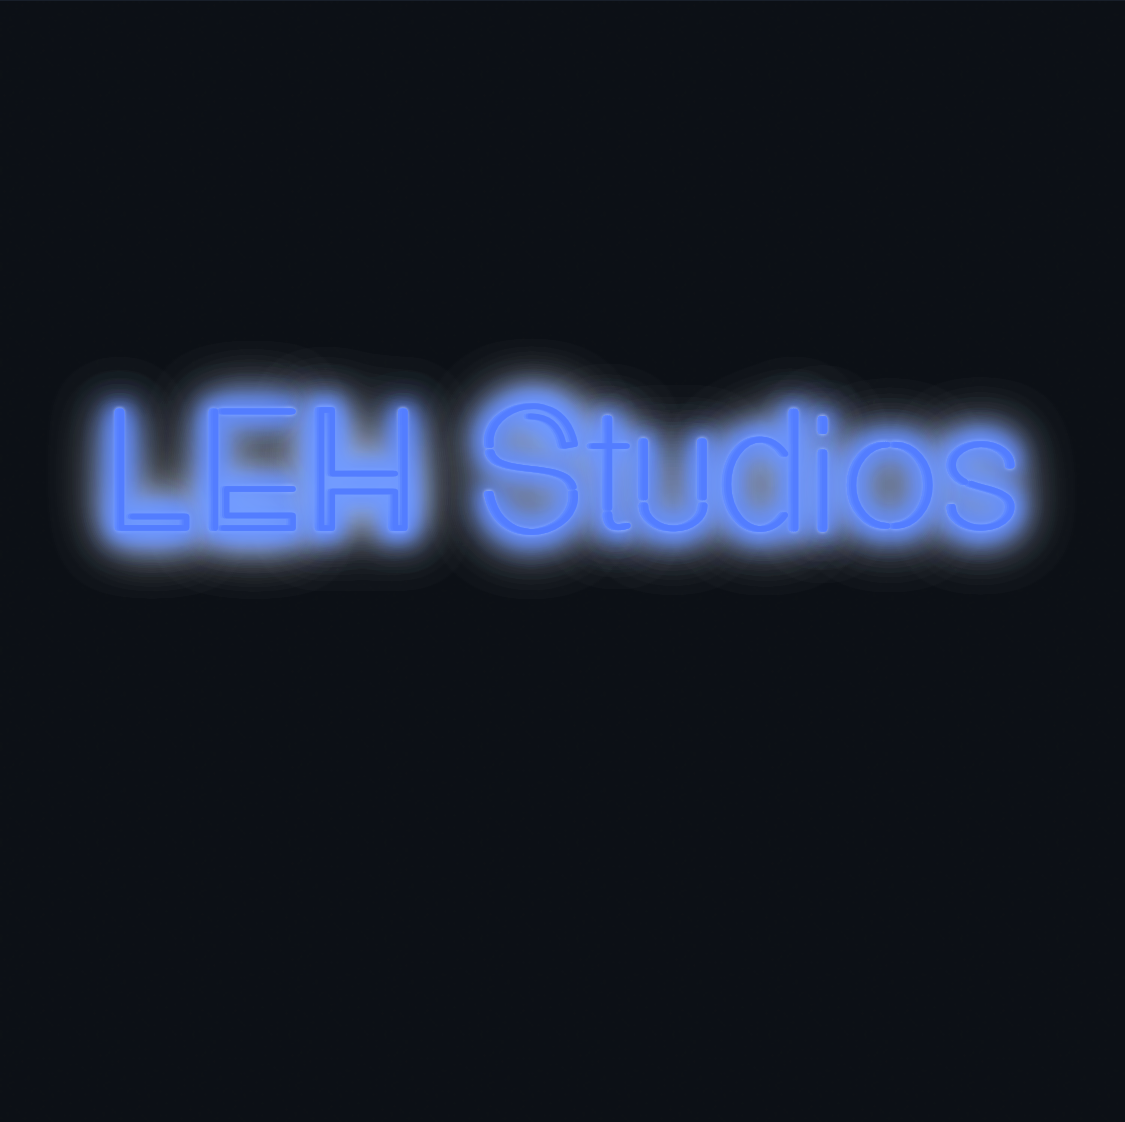 Custom neon sign - LEH Studios